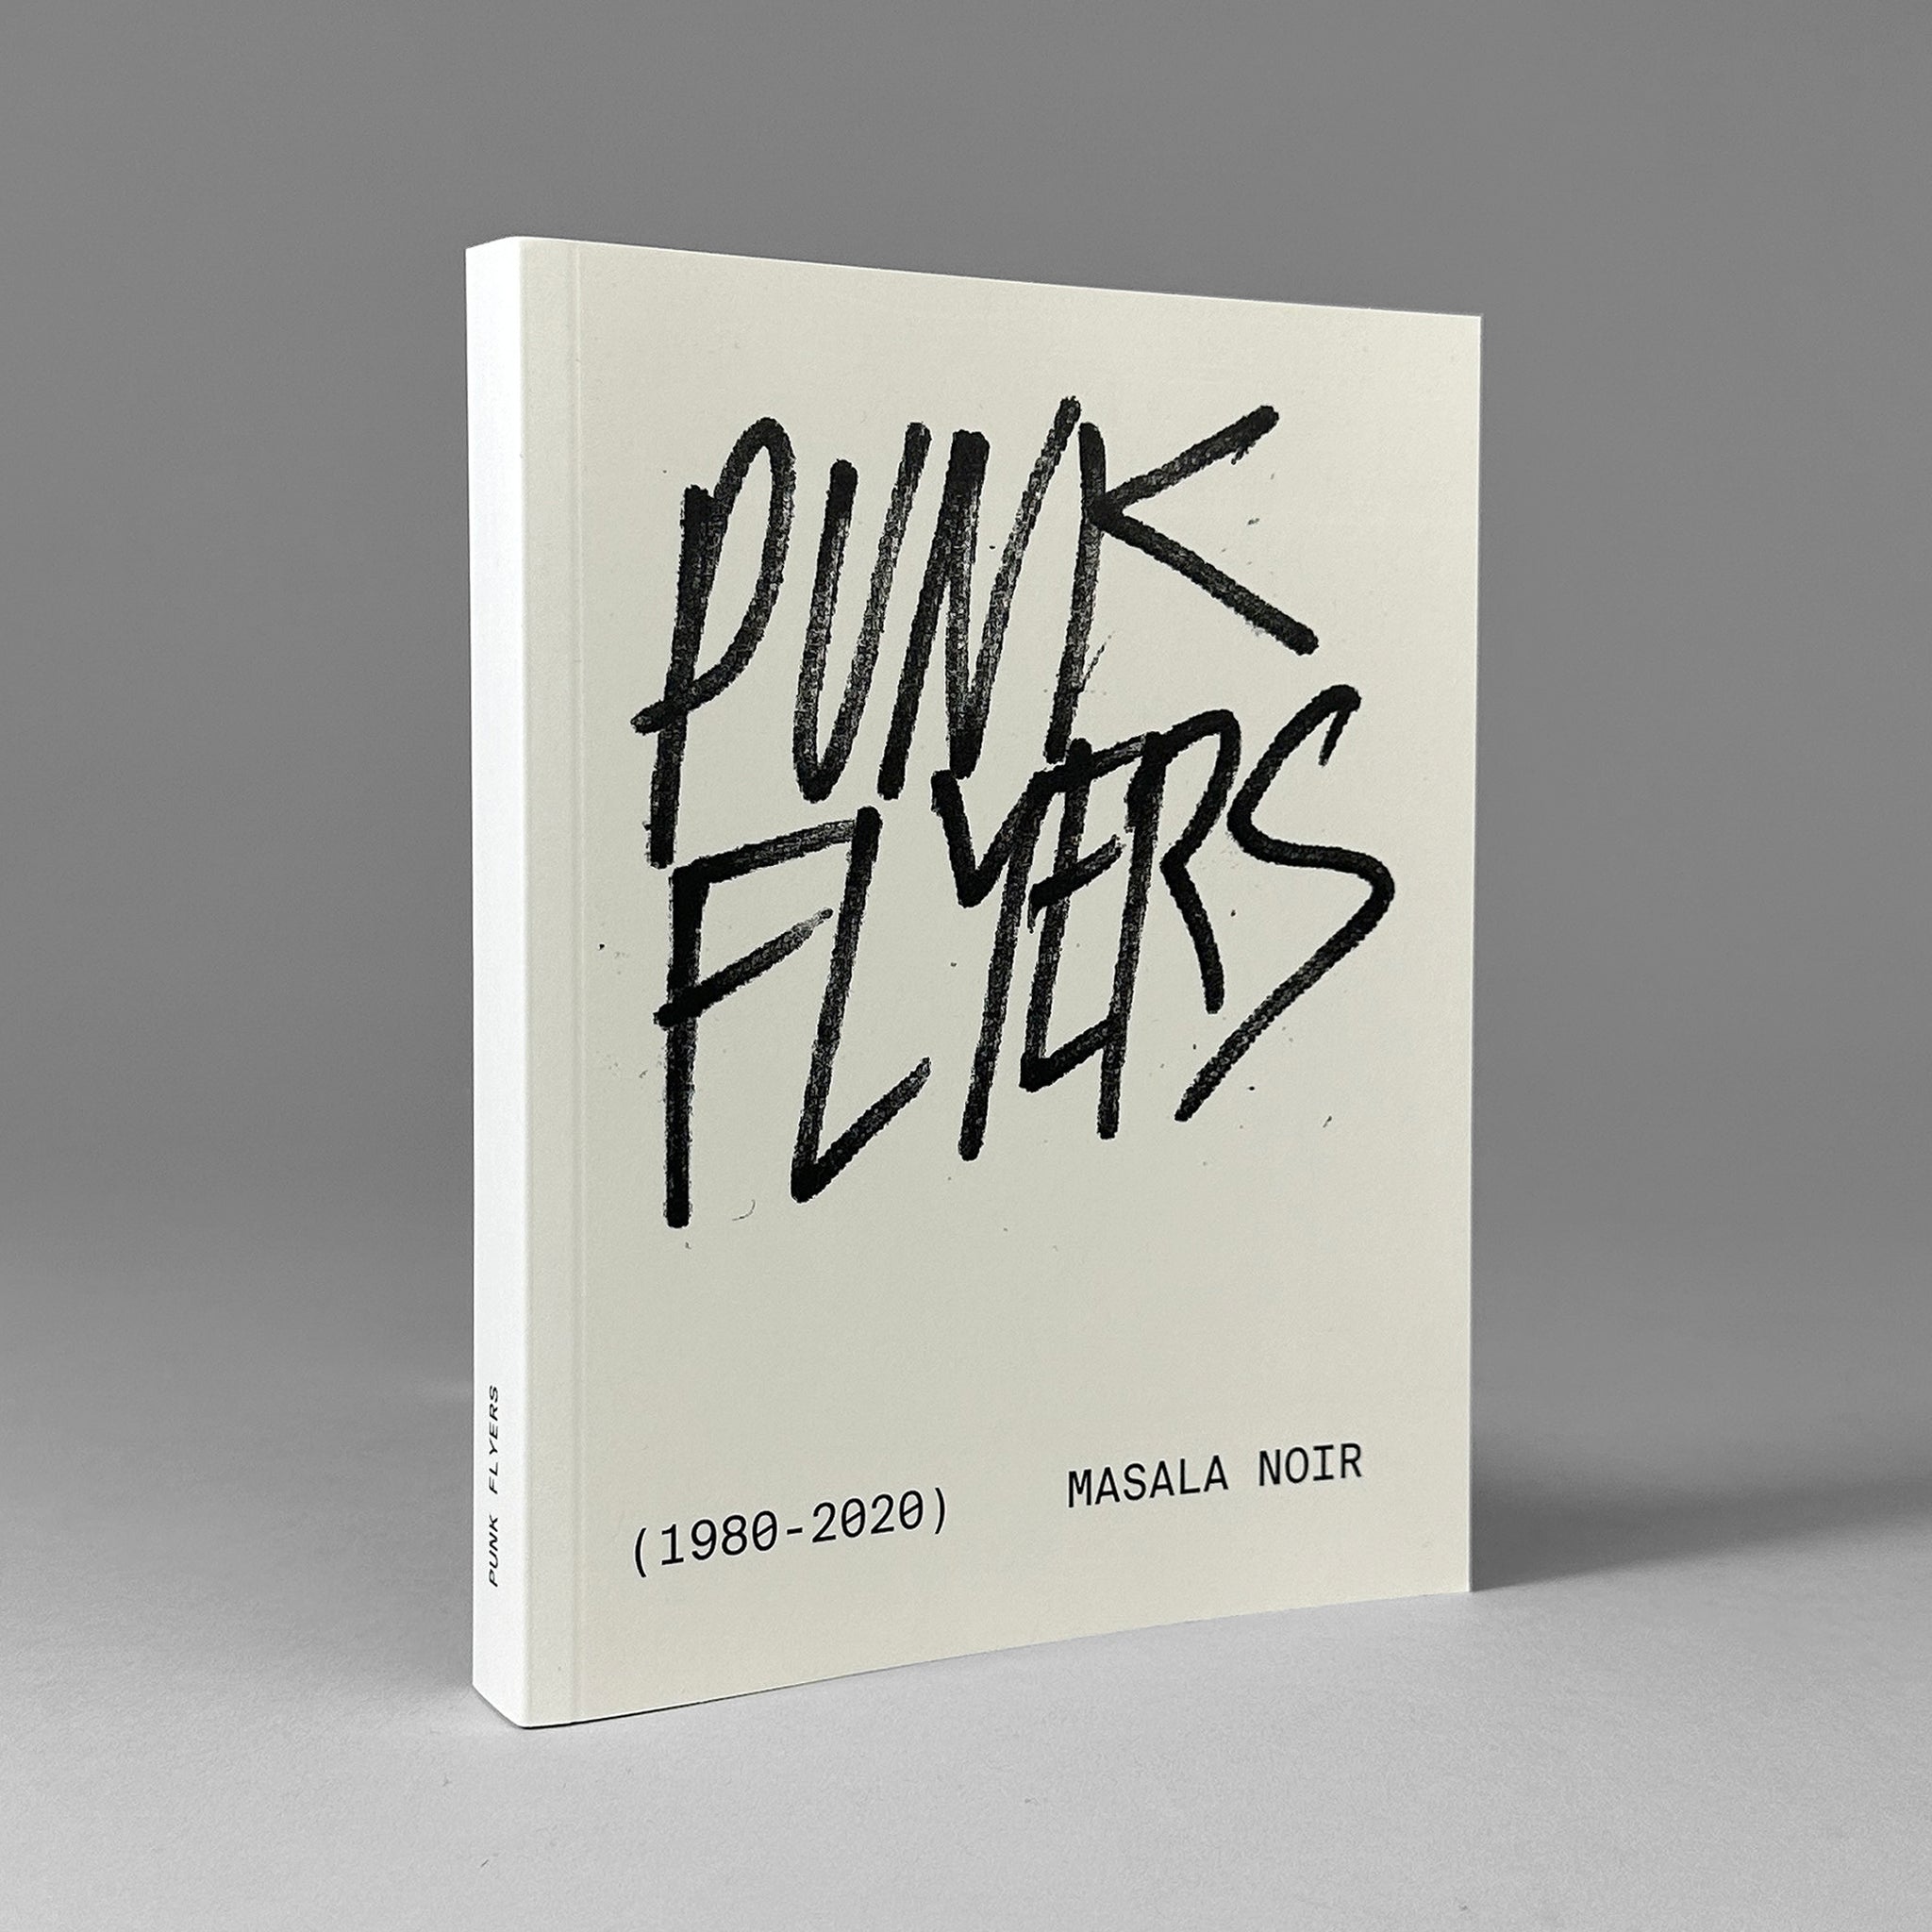 Punk Flyers (1980-2020)